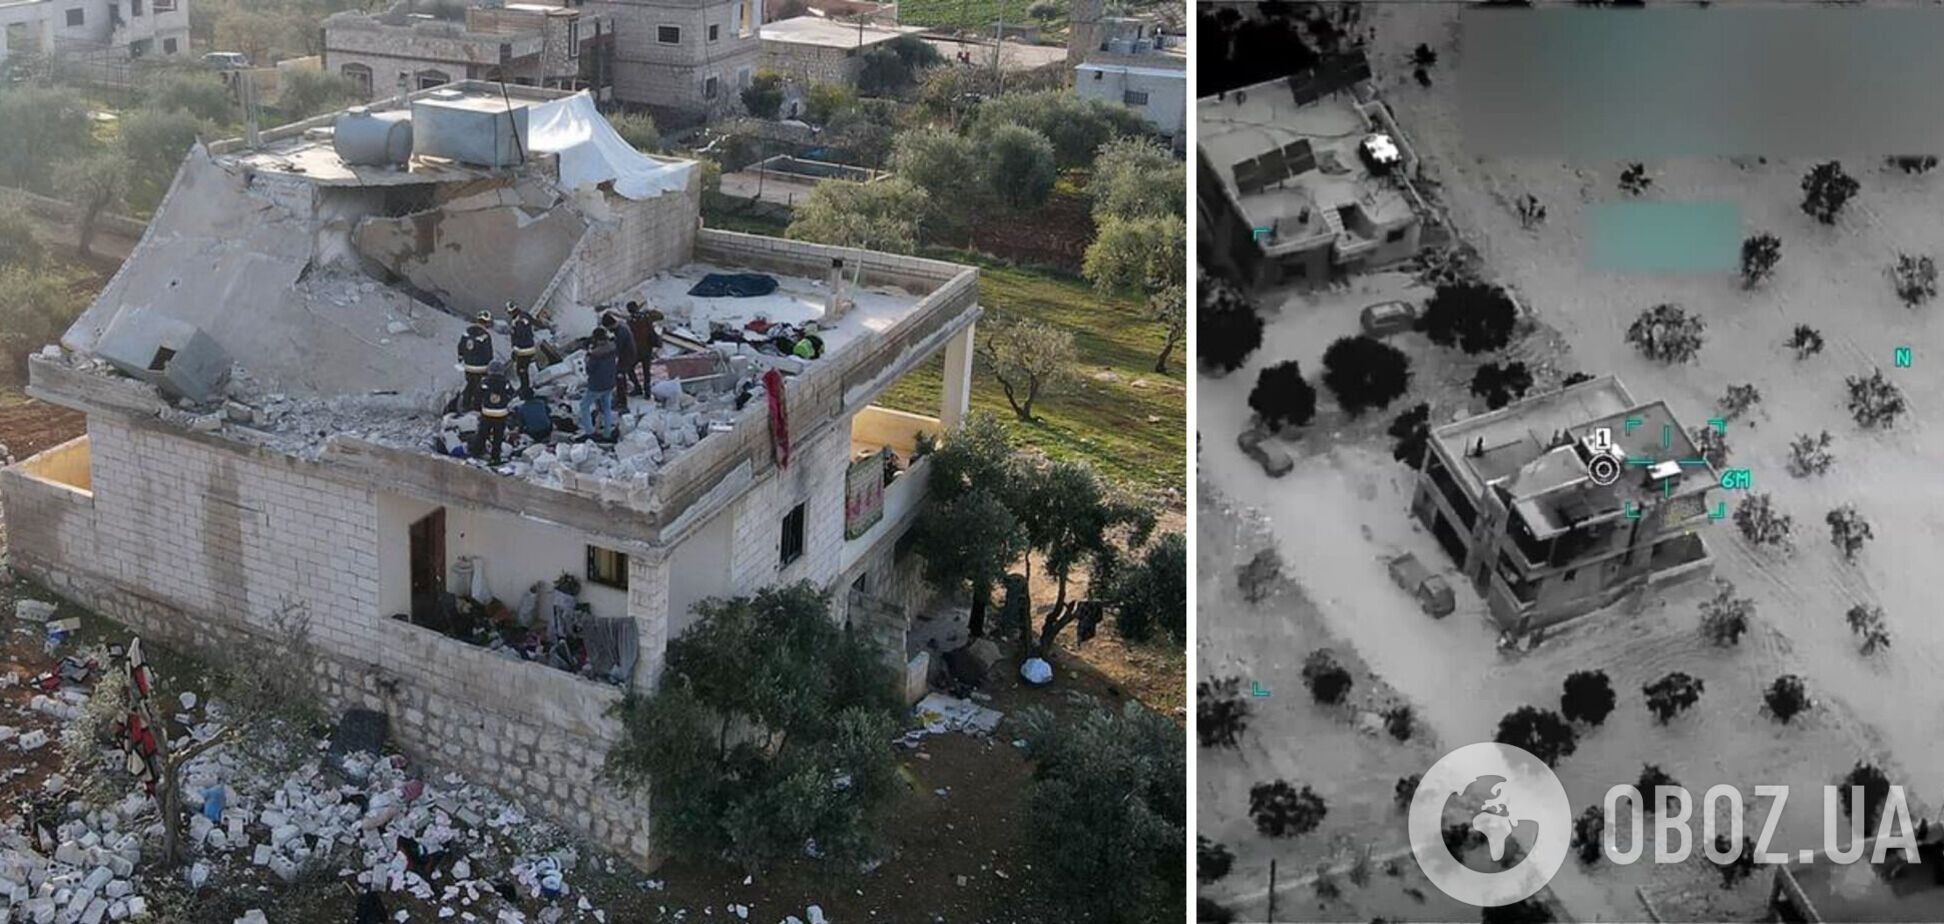 В Сирии ликвидировали главаря ИГИЛ: появились новые кадры из дома аль-Хашими. Фото и видео